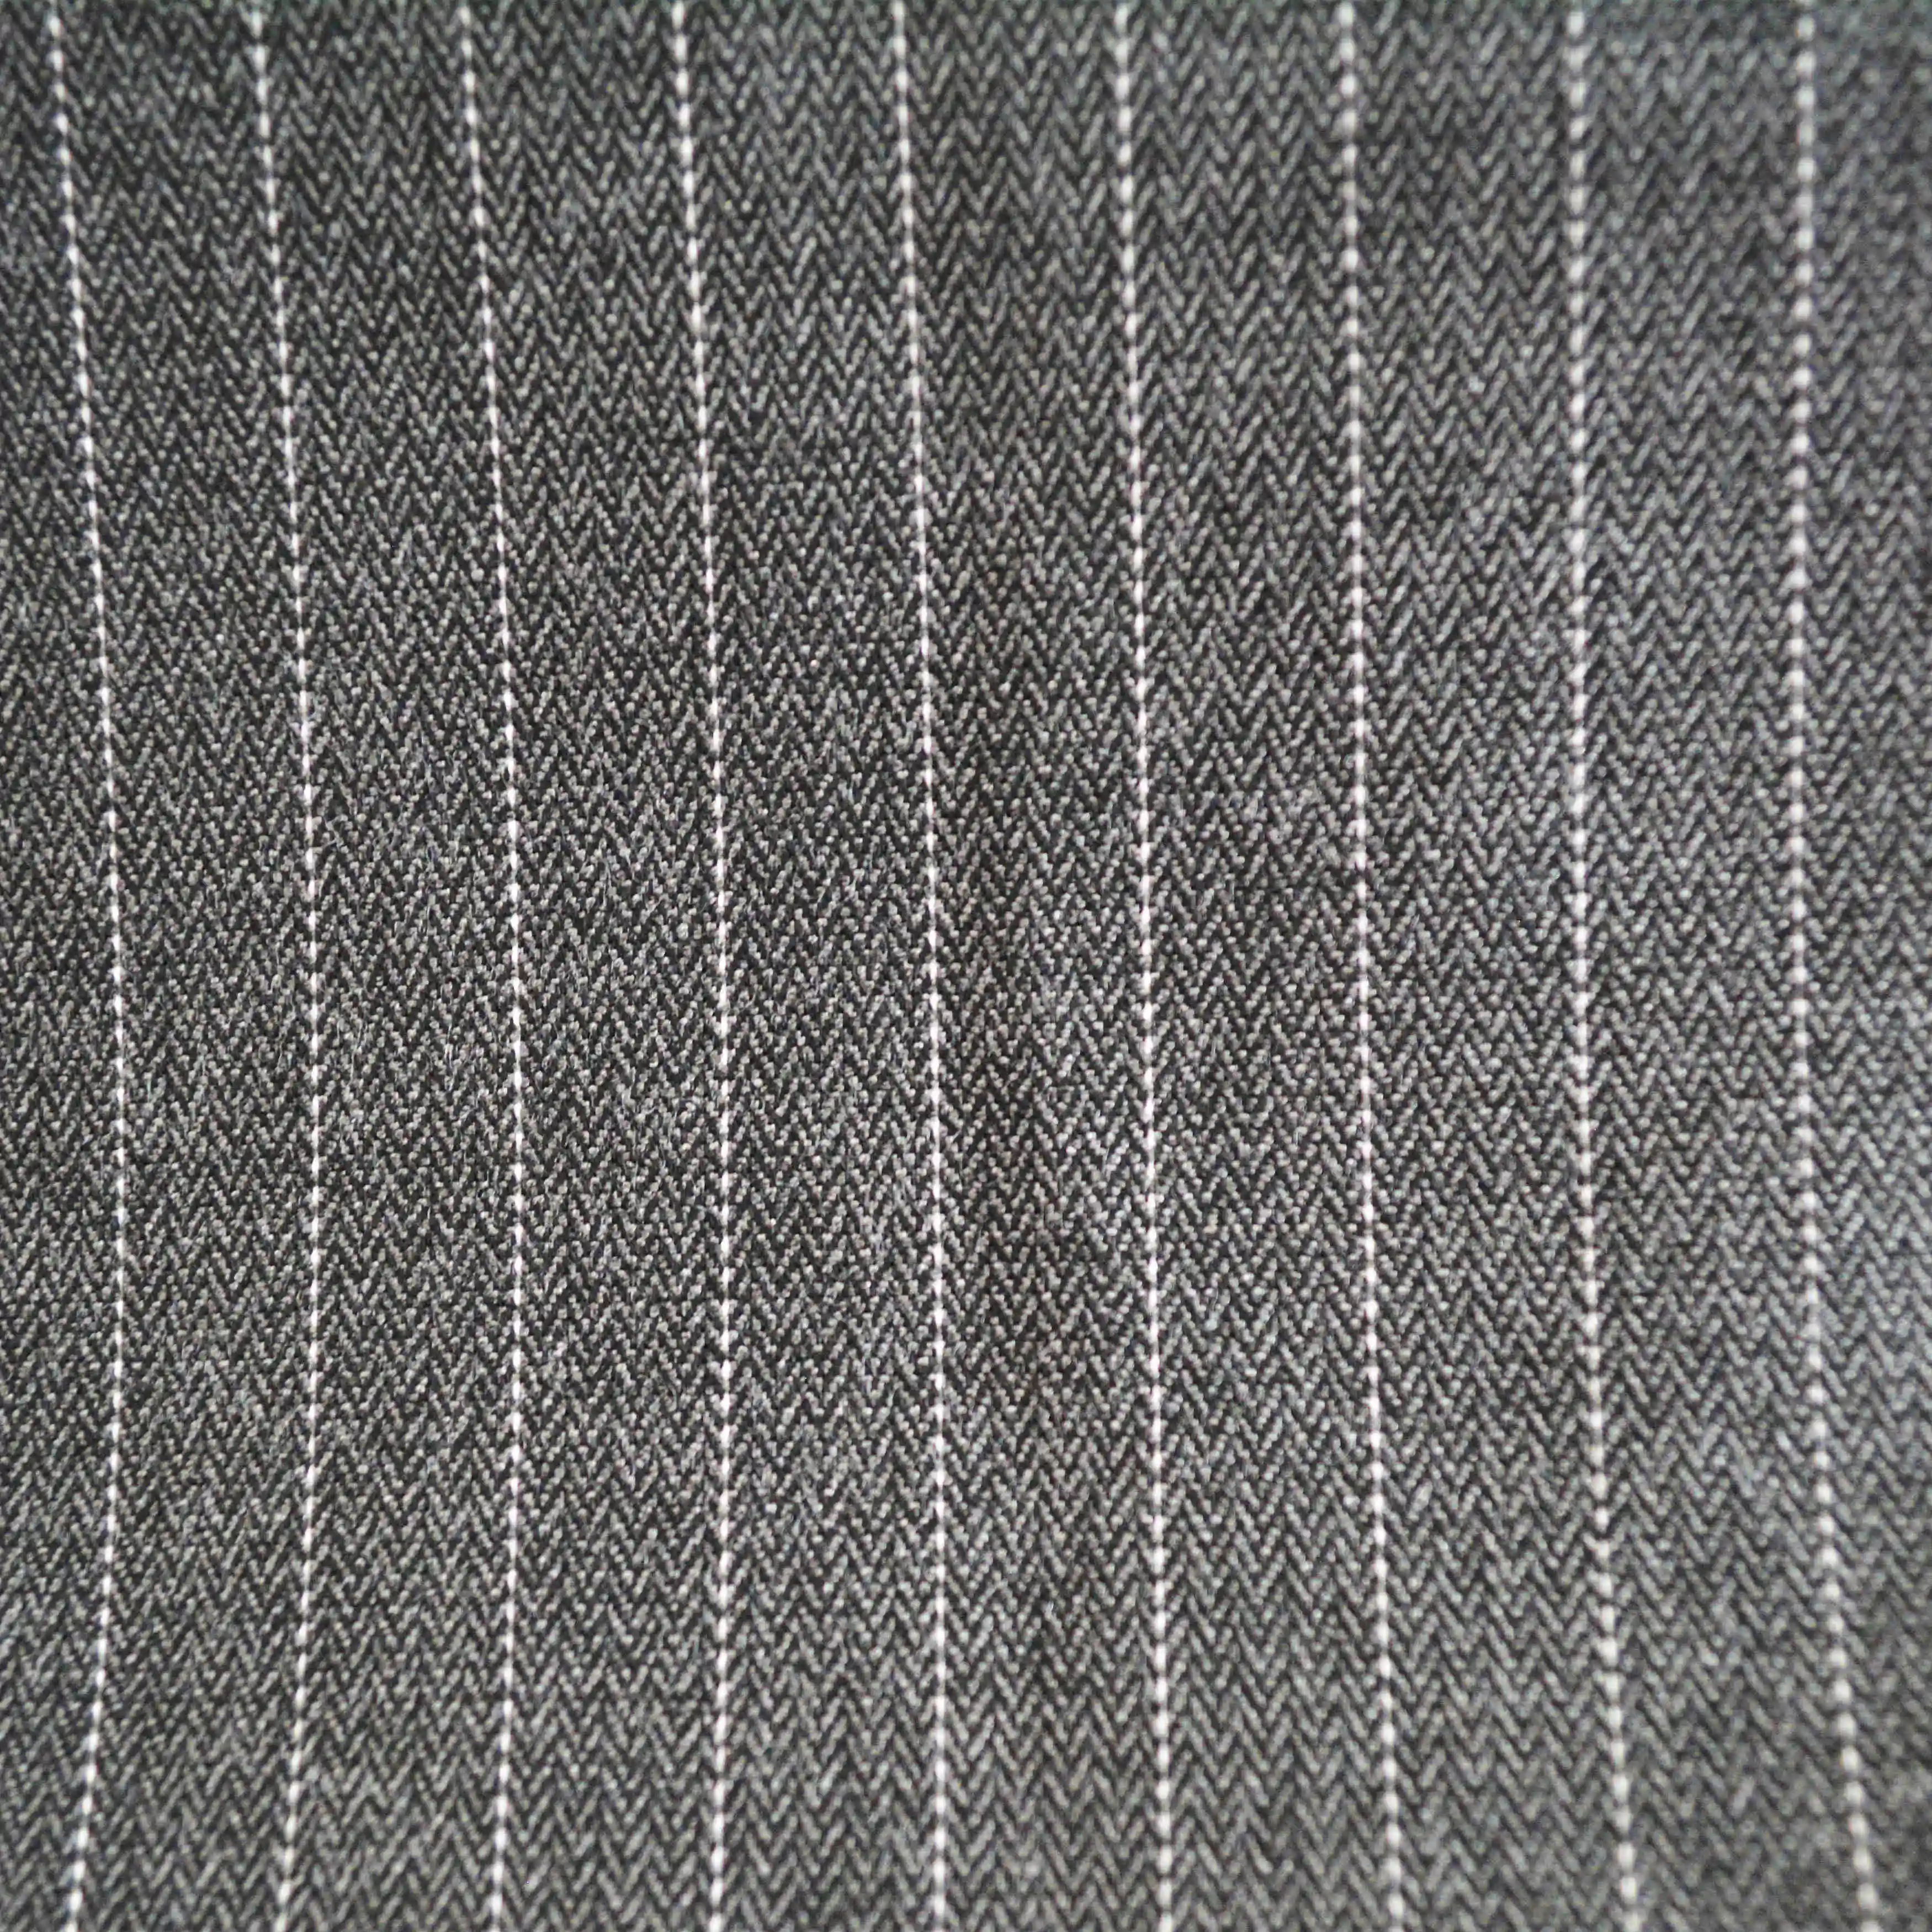 Пряжа окрашенная в полоску ткань для платья полиэстер вискоза спандекс костюмная ткань для женщин и мужчин